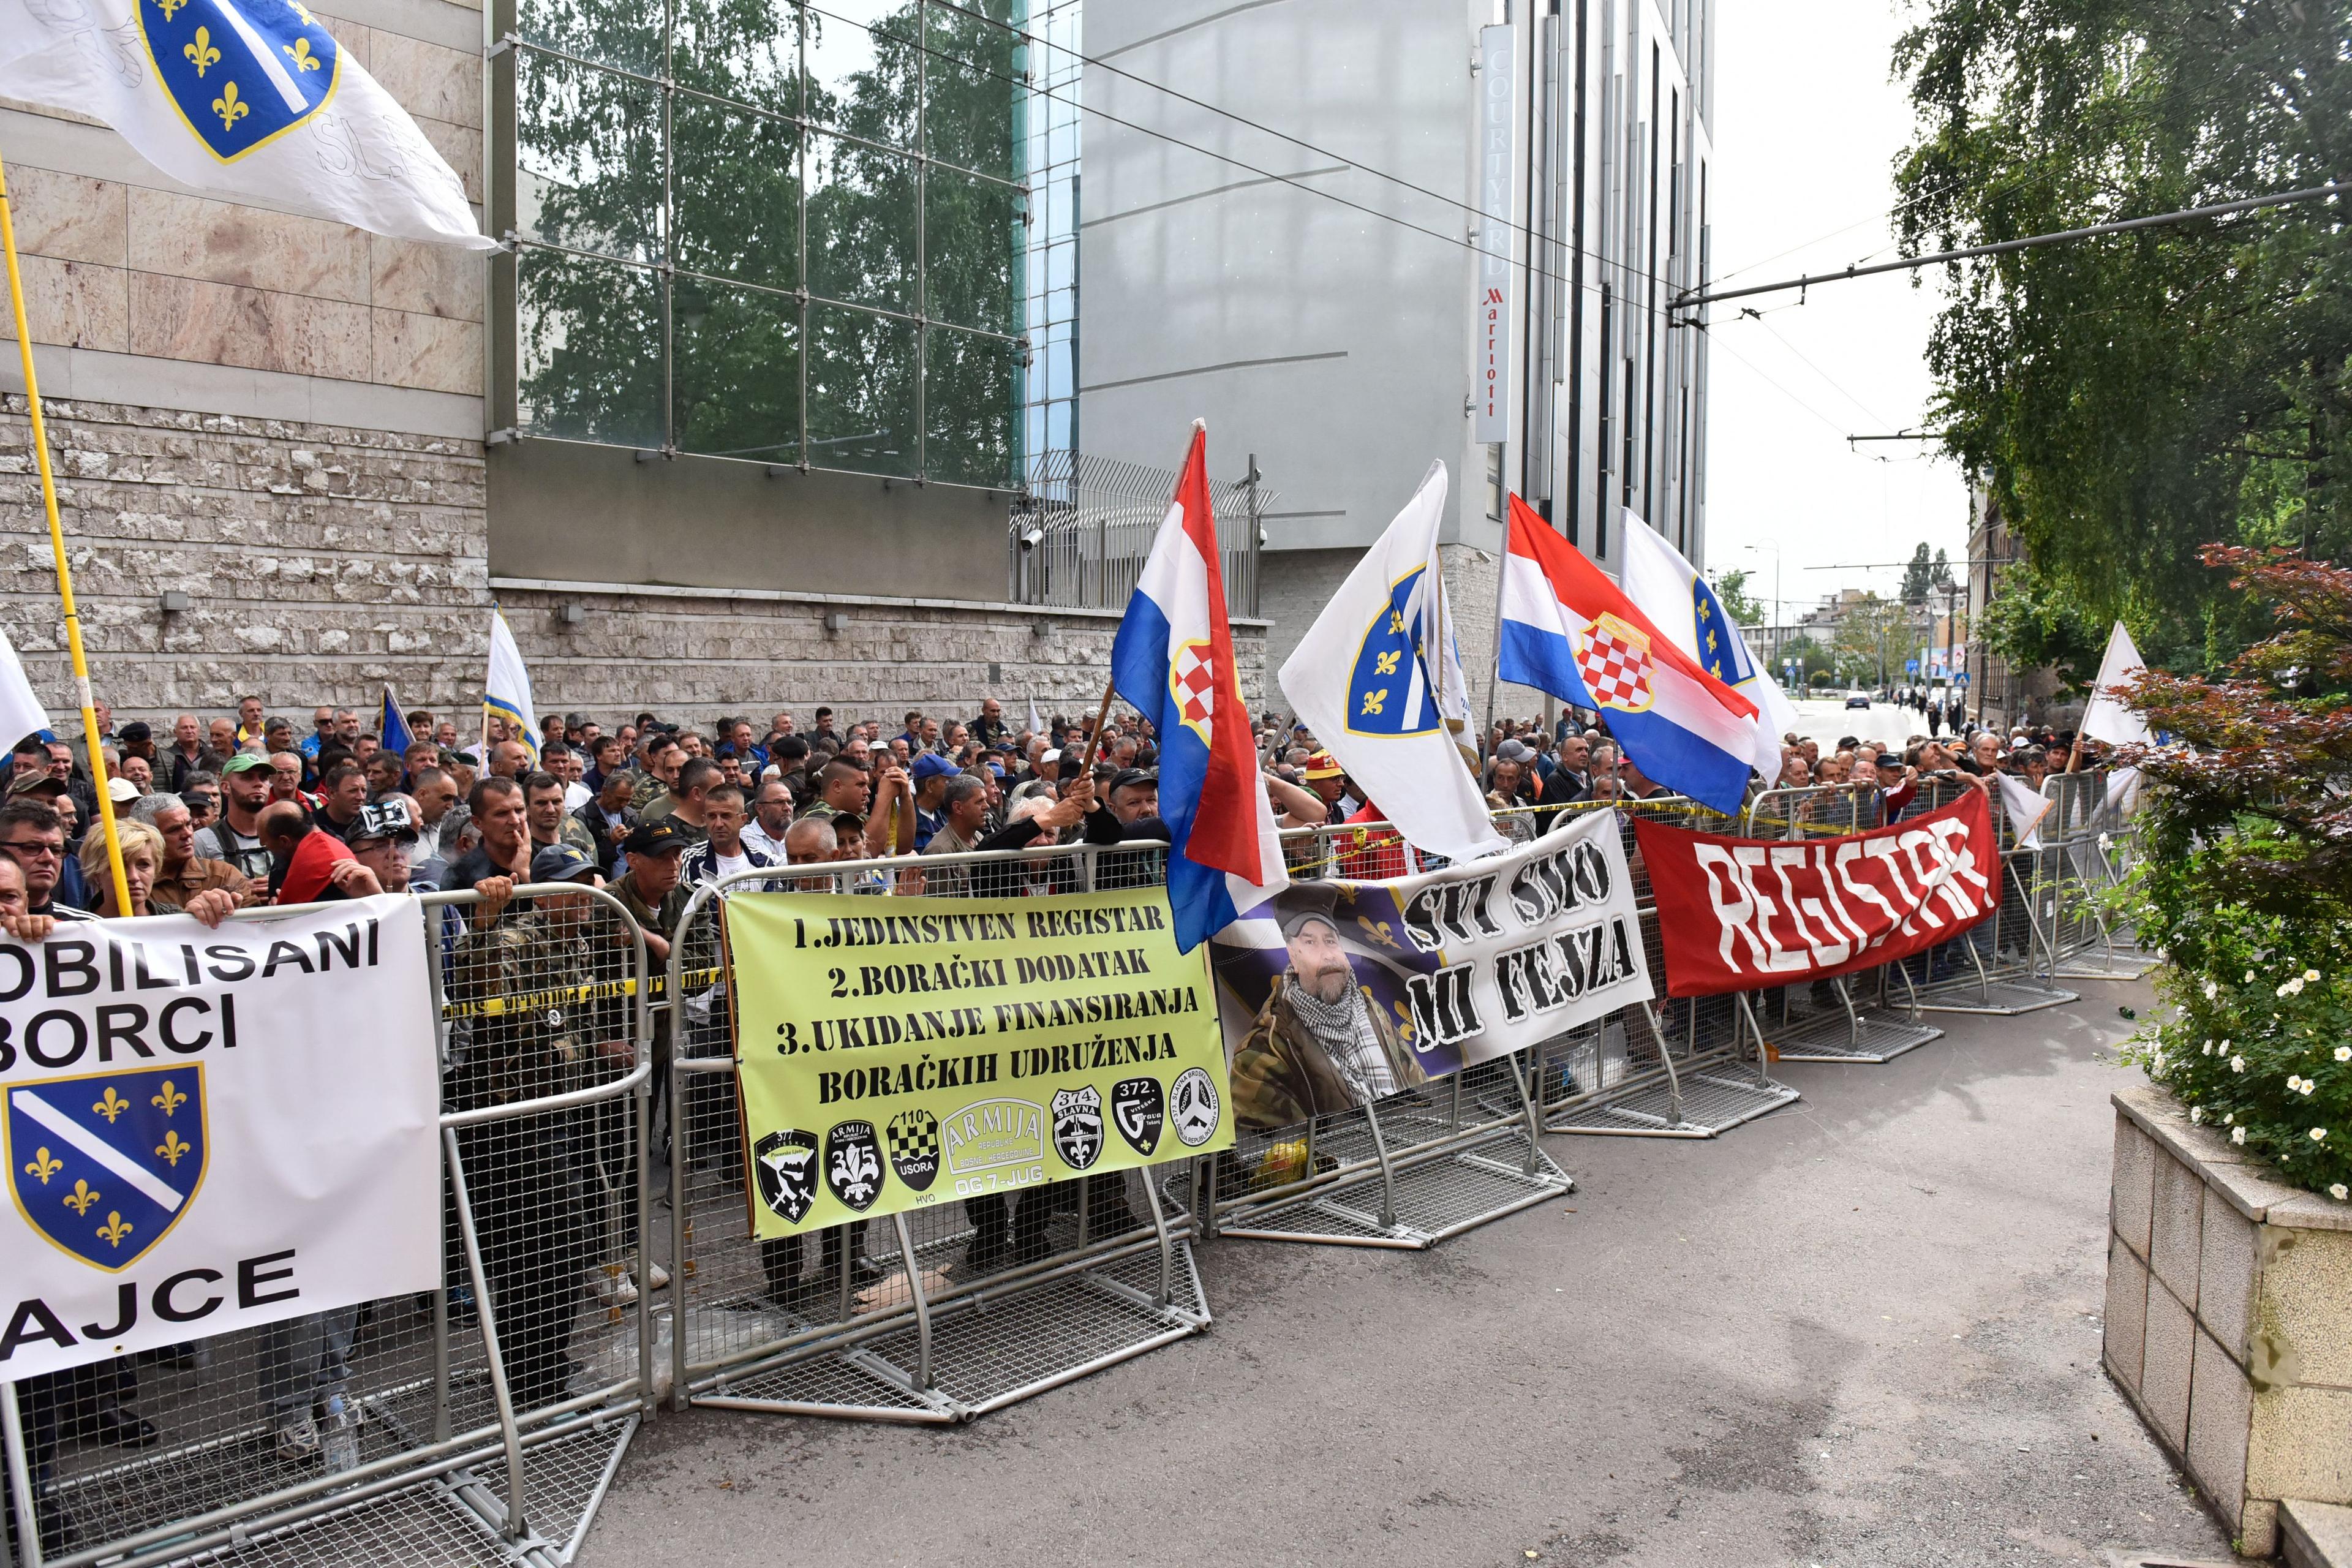 Donošenje zakona borci tražili i na protestima - Avaz